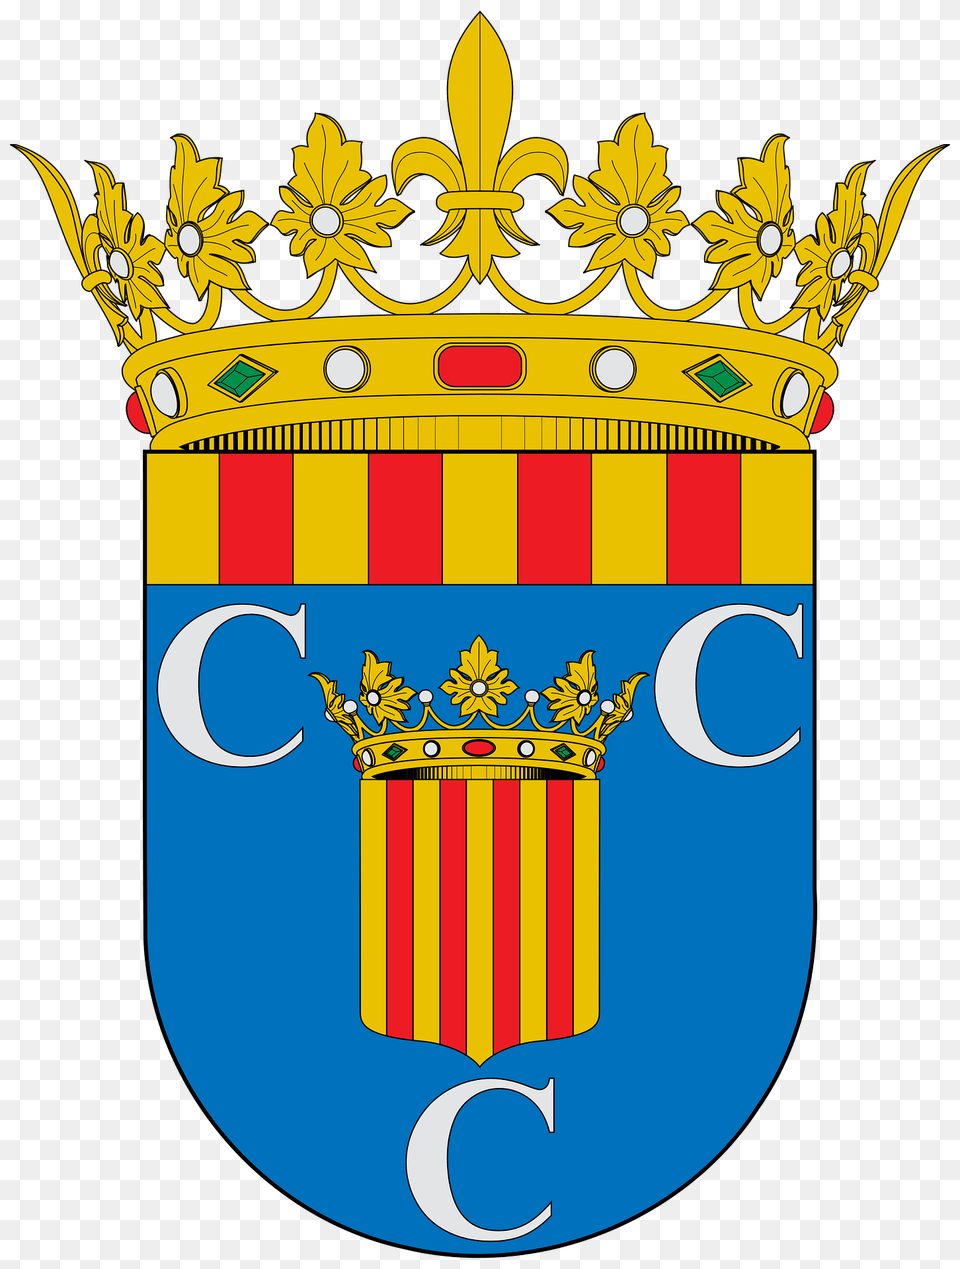 Escudo De La Comarca De La Comunidad De Calatayud Clipart, Emblem, Symbol, Mailbox Png Image